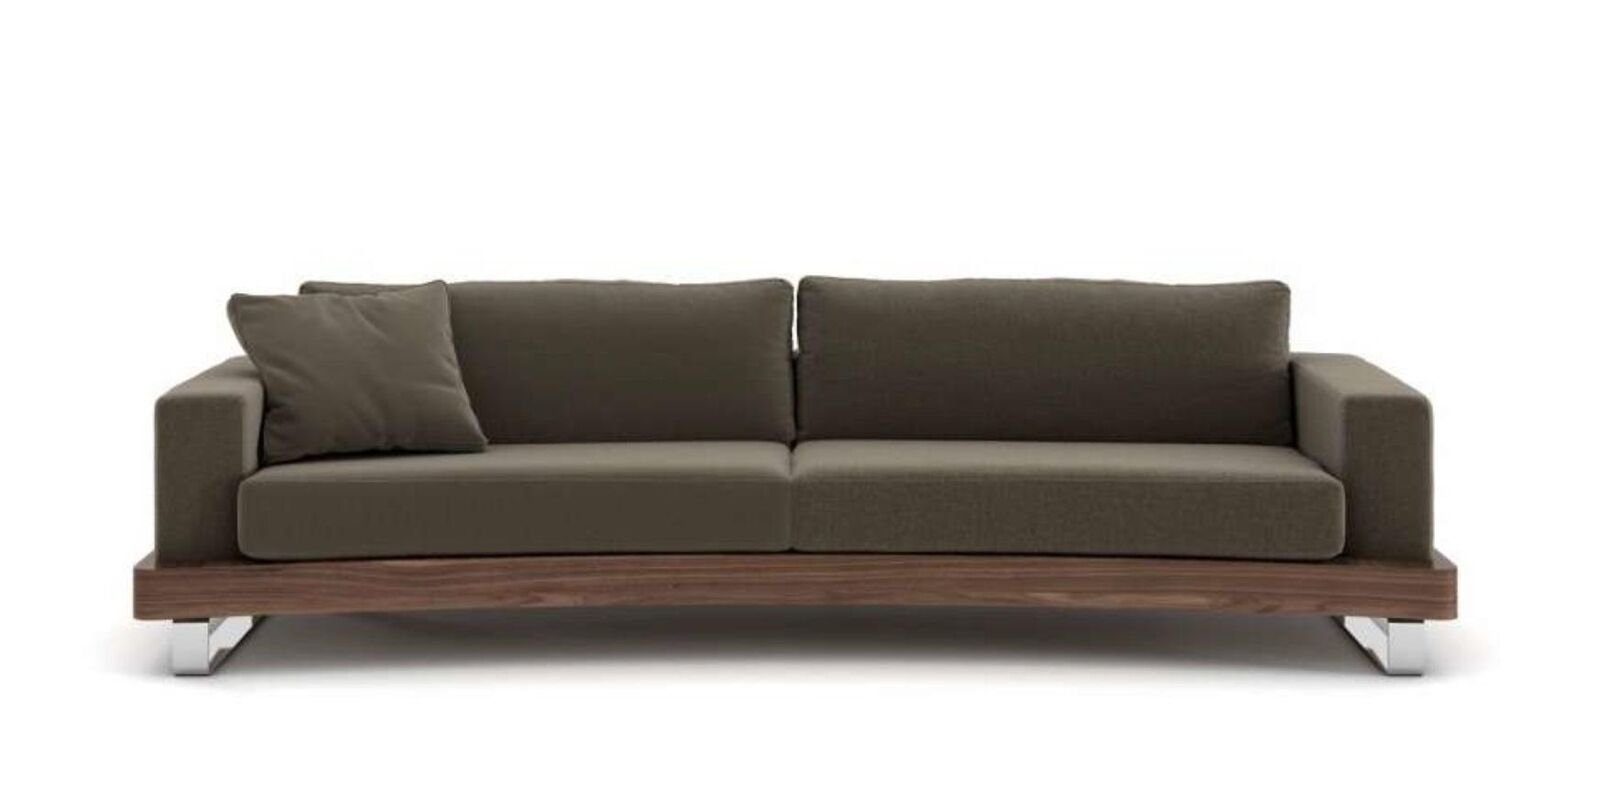 JVmoebel 2 Teile, Luxus, Zweisitzer Sofa Sofa Made in Dreisitzer Couchen Sofas Wohnzimmergarnitu Europa